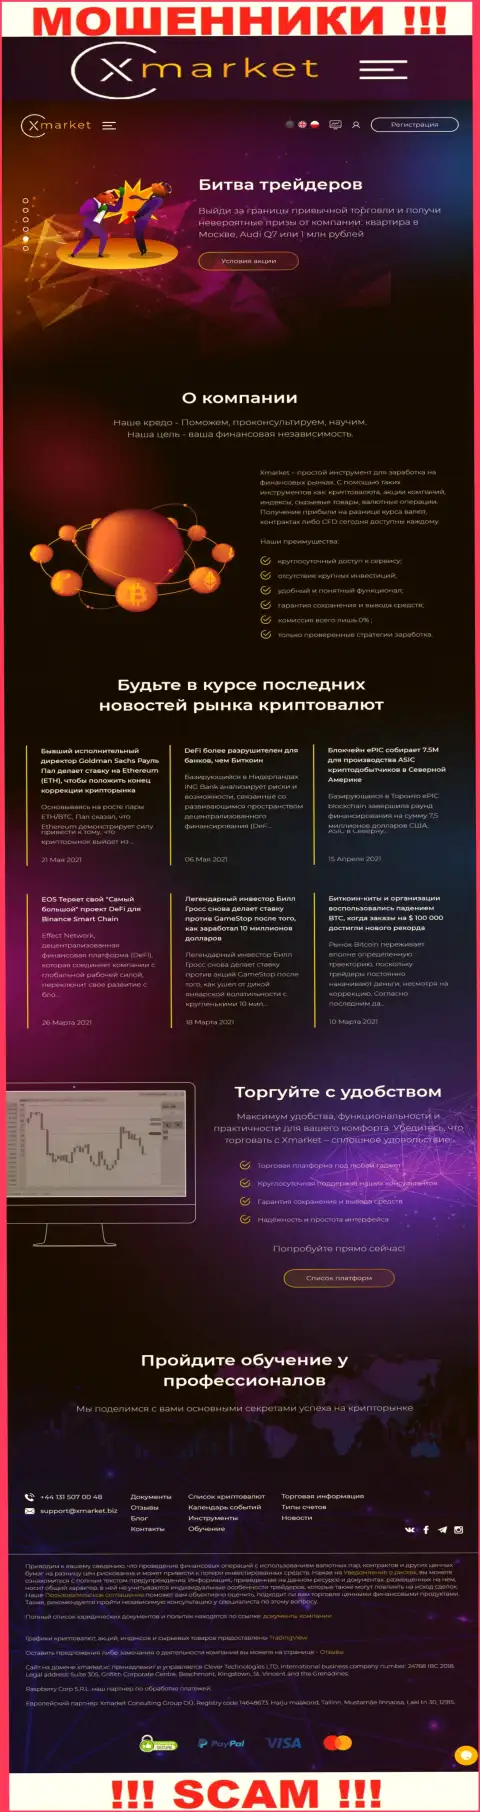 Официальный информационный портал internet мошенников и шулеров конторы Х Маркет